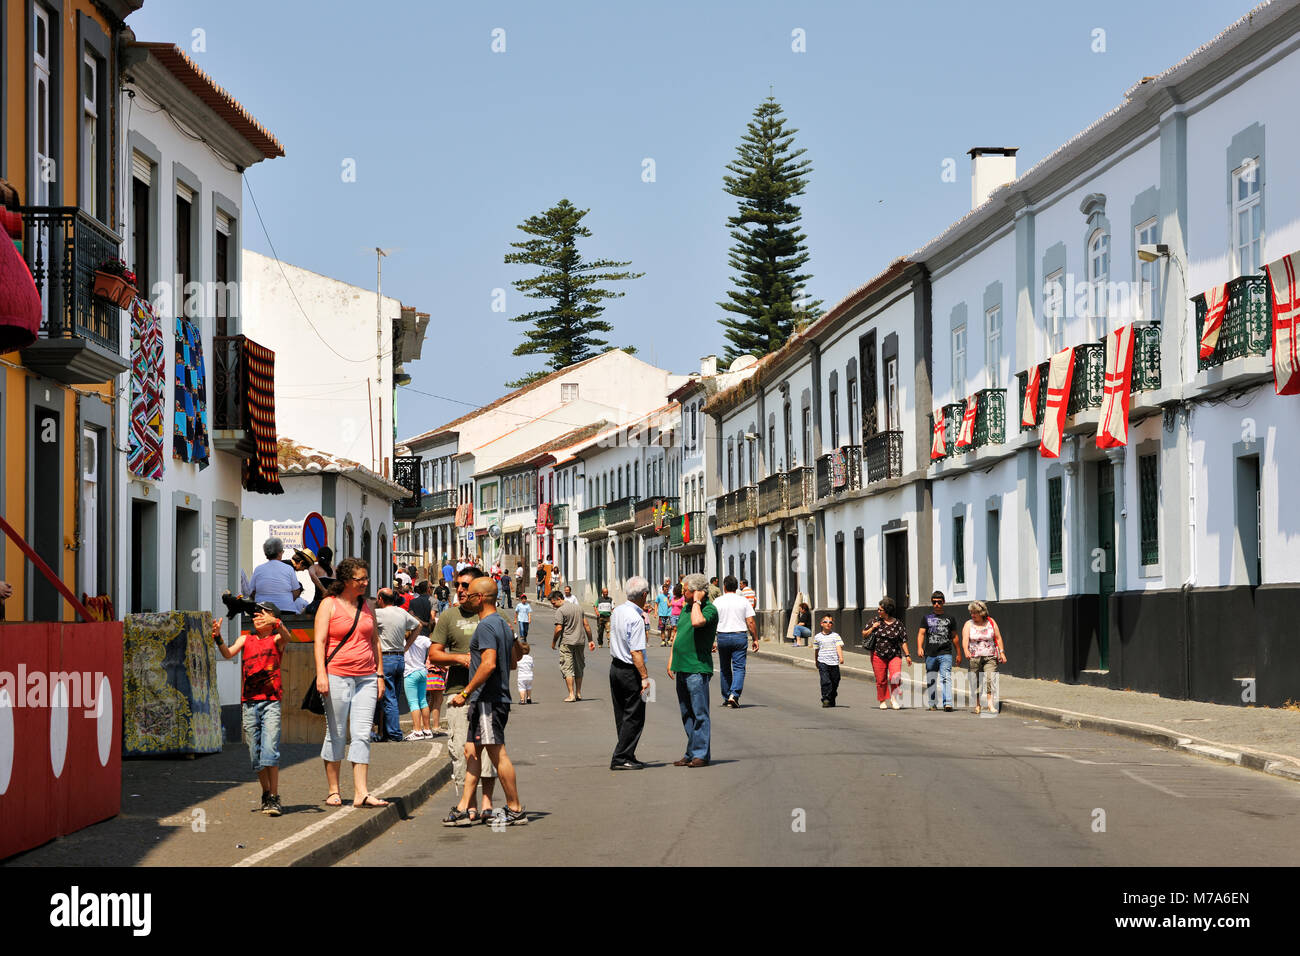 São Pedro street during a bullfight (tourada à corda). Angra do Heroísmo, a UNESCO World Heritage Site. Terceira island, Azores. Portugal Stock Photo